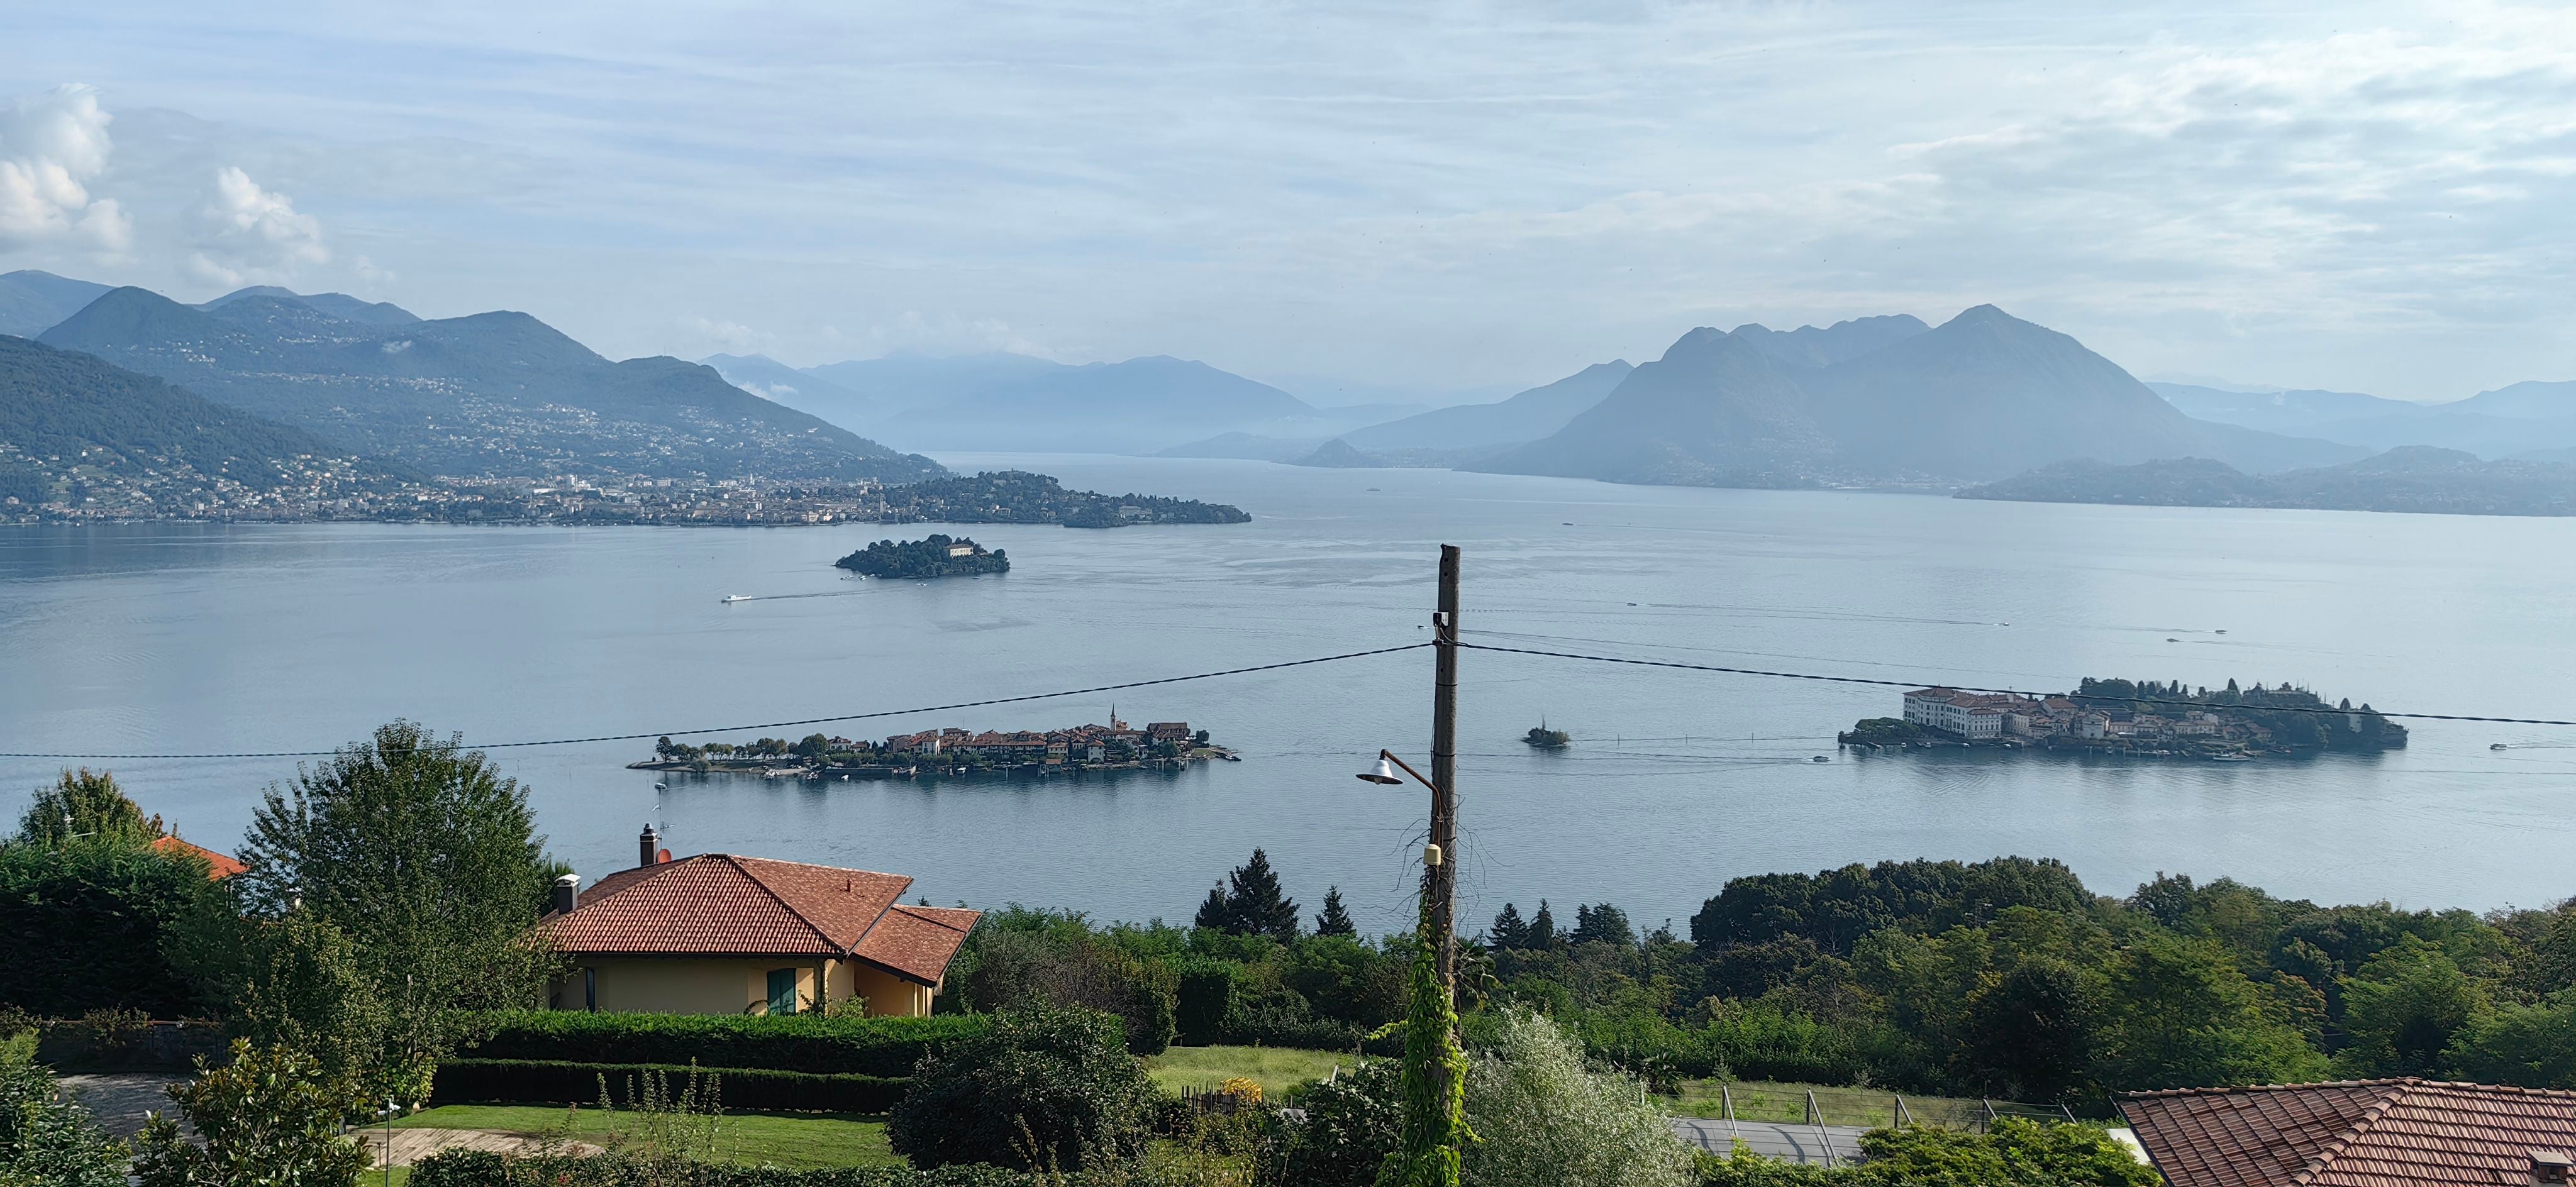 Vista parcial del Lago Maggiore desde las montañas cercanas a la ciudad de Stresa. Se aprecian tres de sus islas más emblemáticas: Isola Bella (derecha), Isola Superiore e Isola Madre (al fondo).